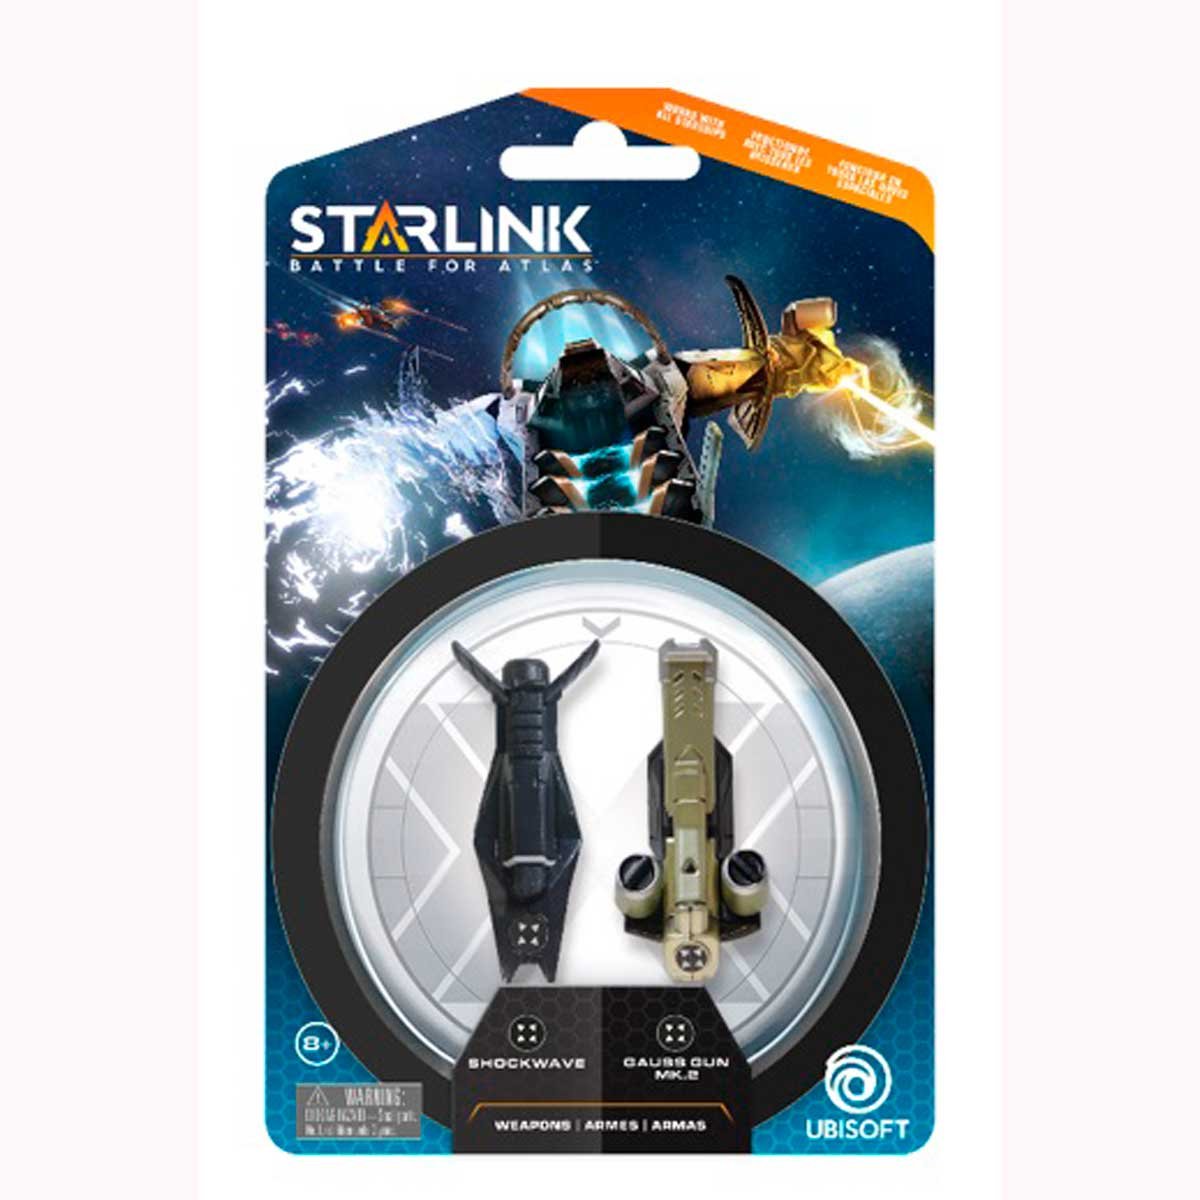 Starlink Battle For Atlas Shockwave Weapon Pack